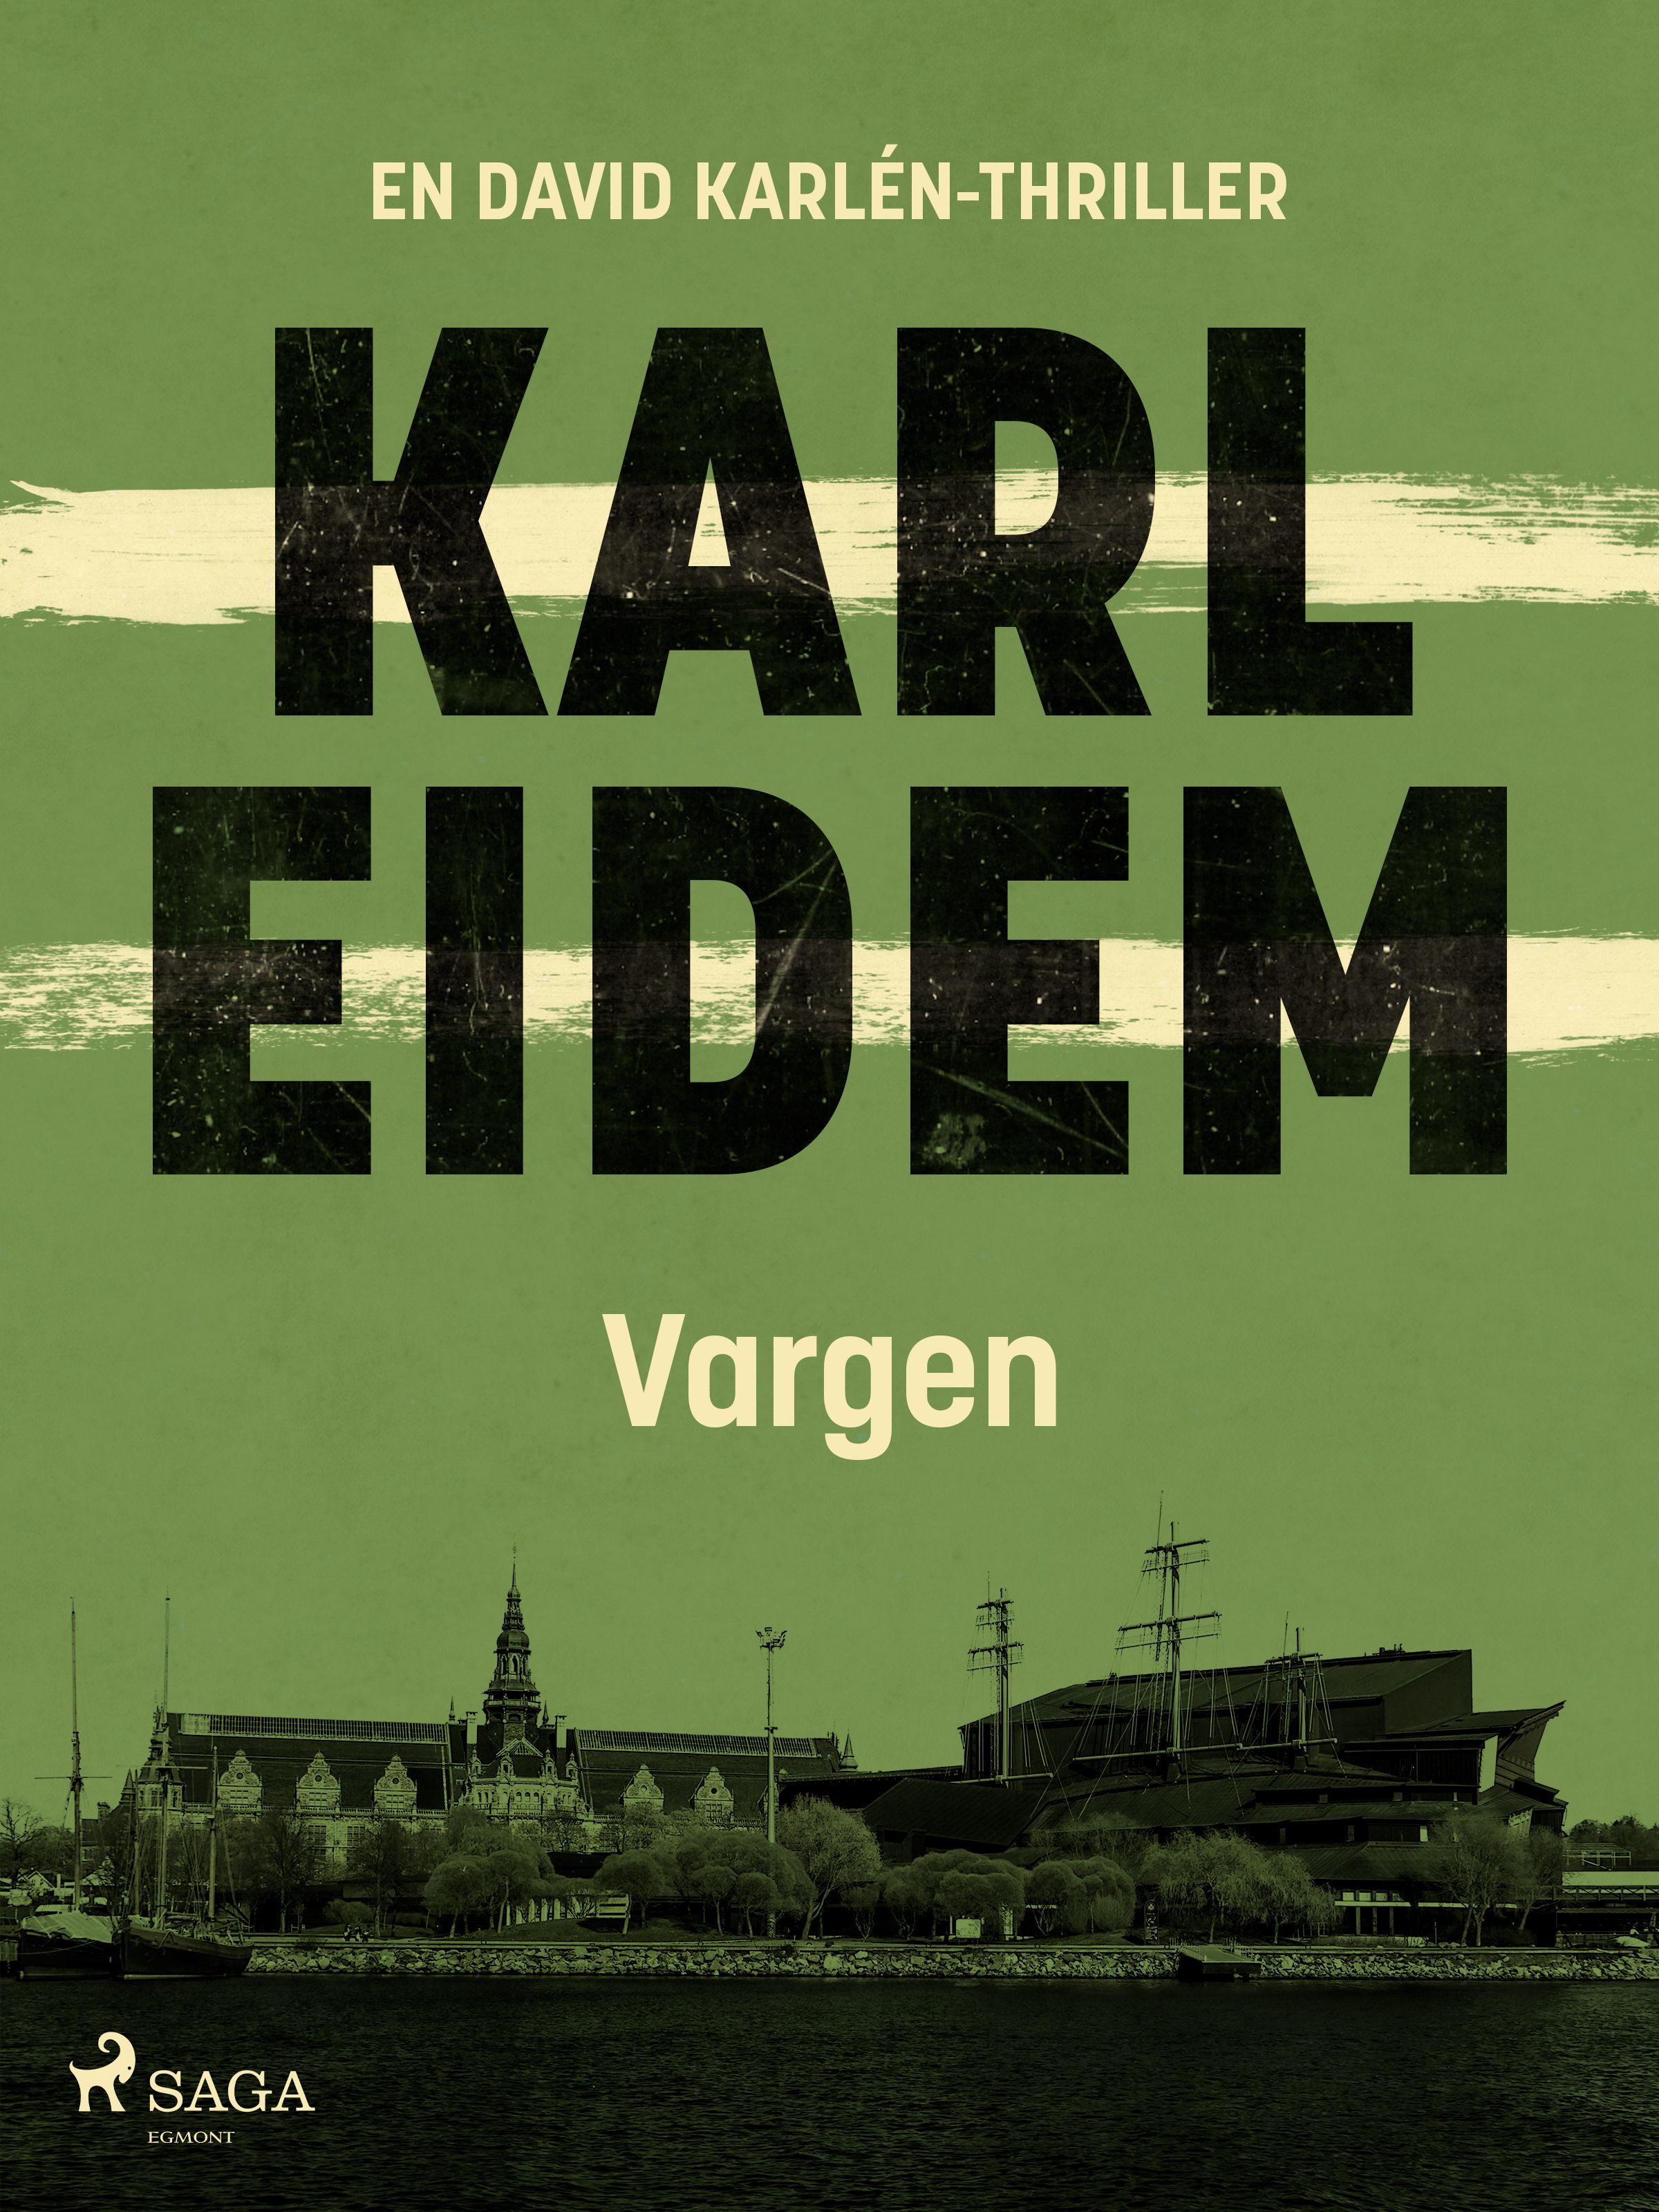 Vargen, eBook by Karl Eidem